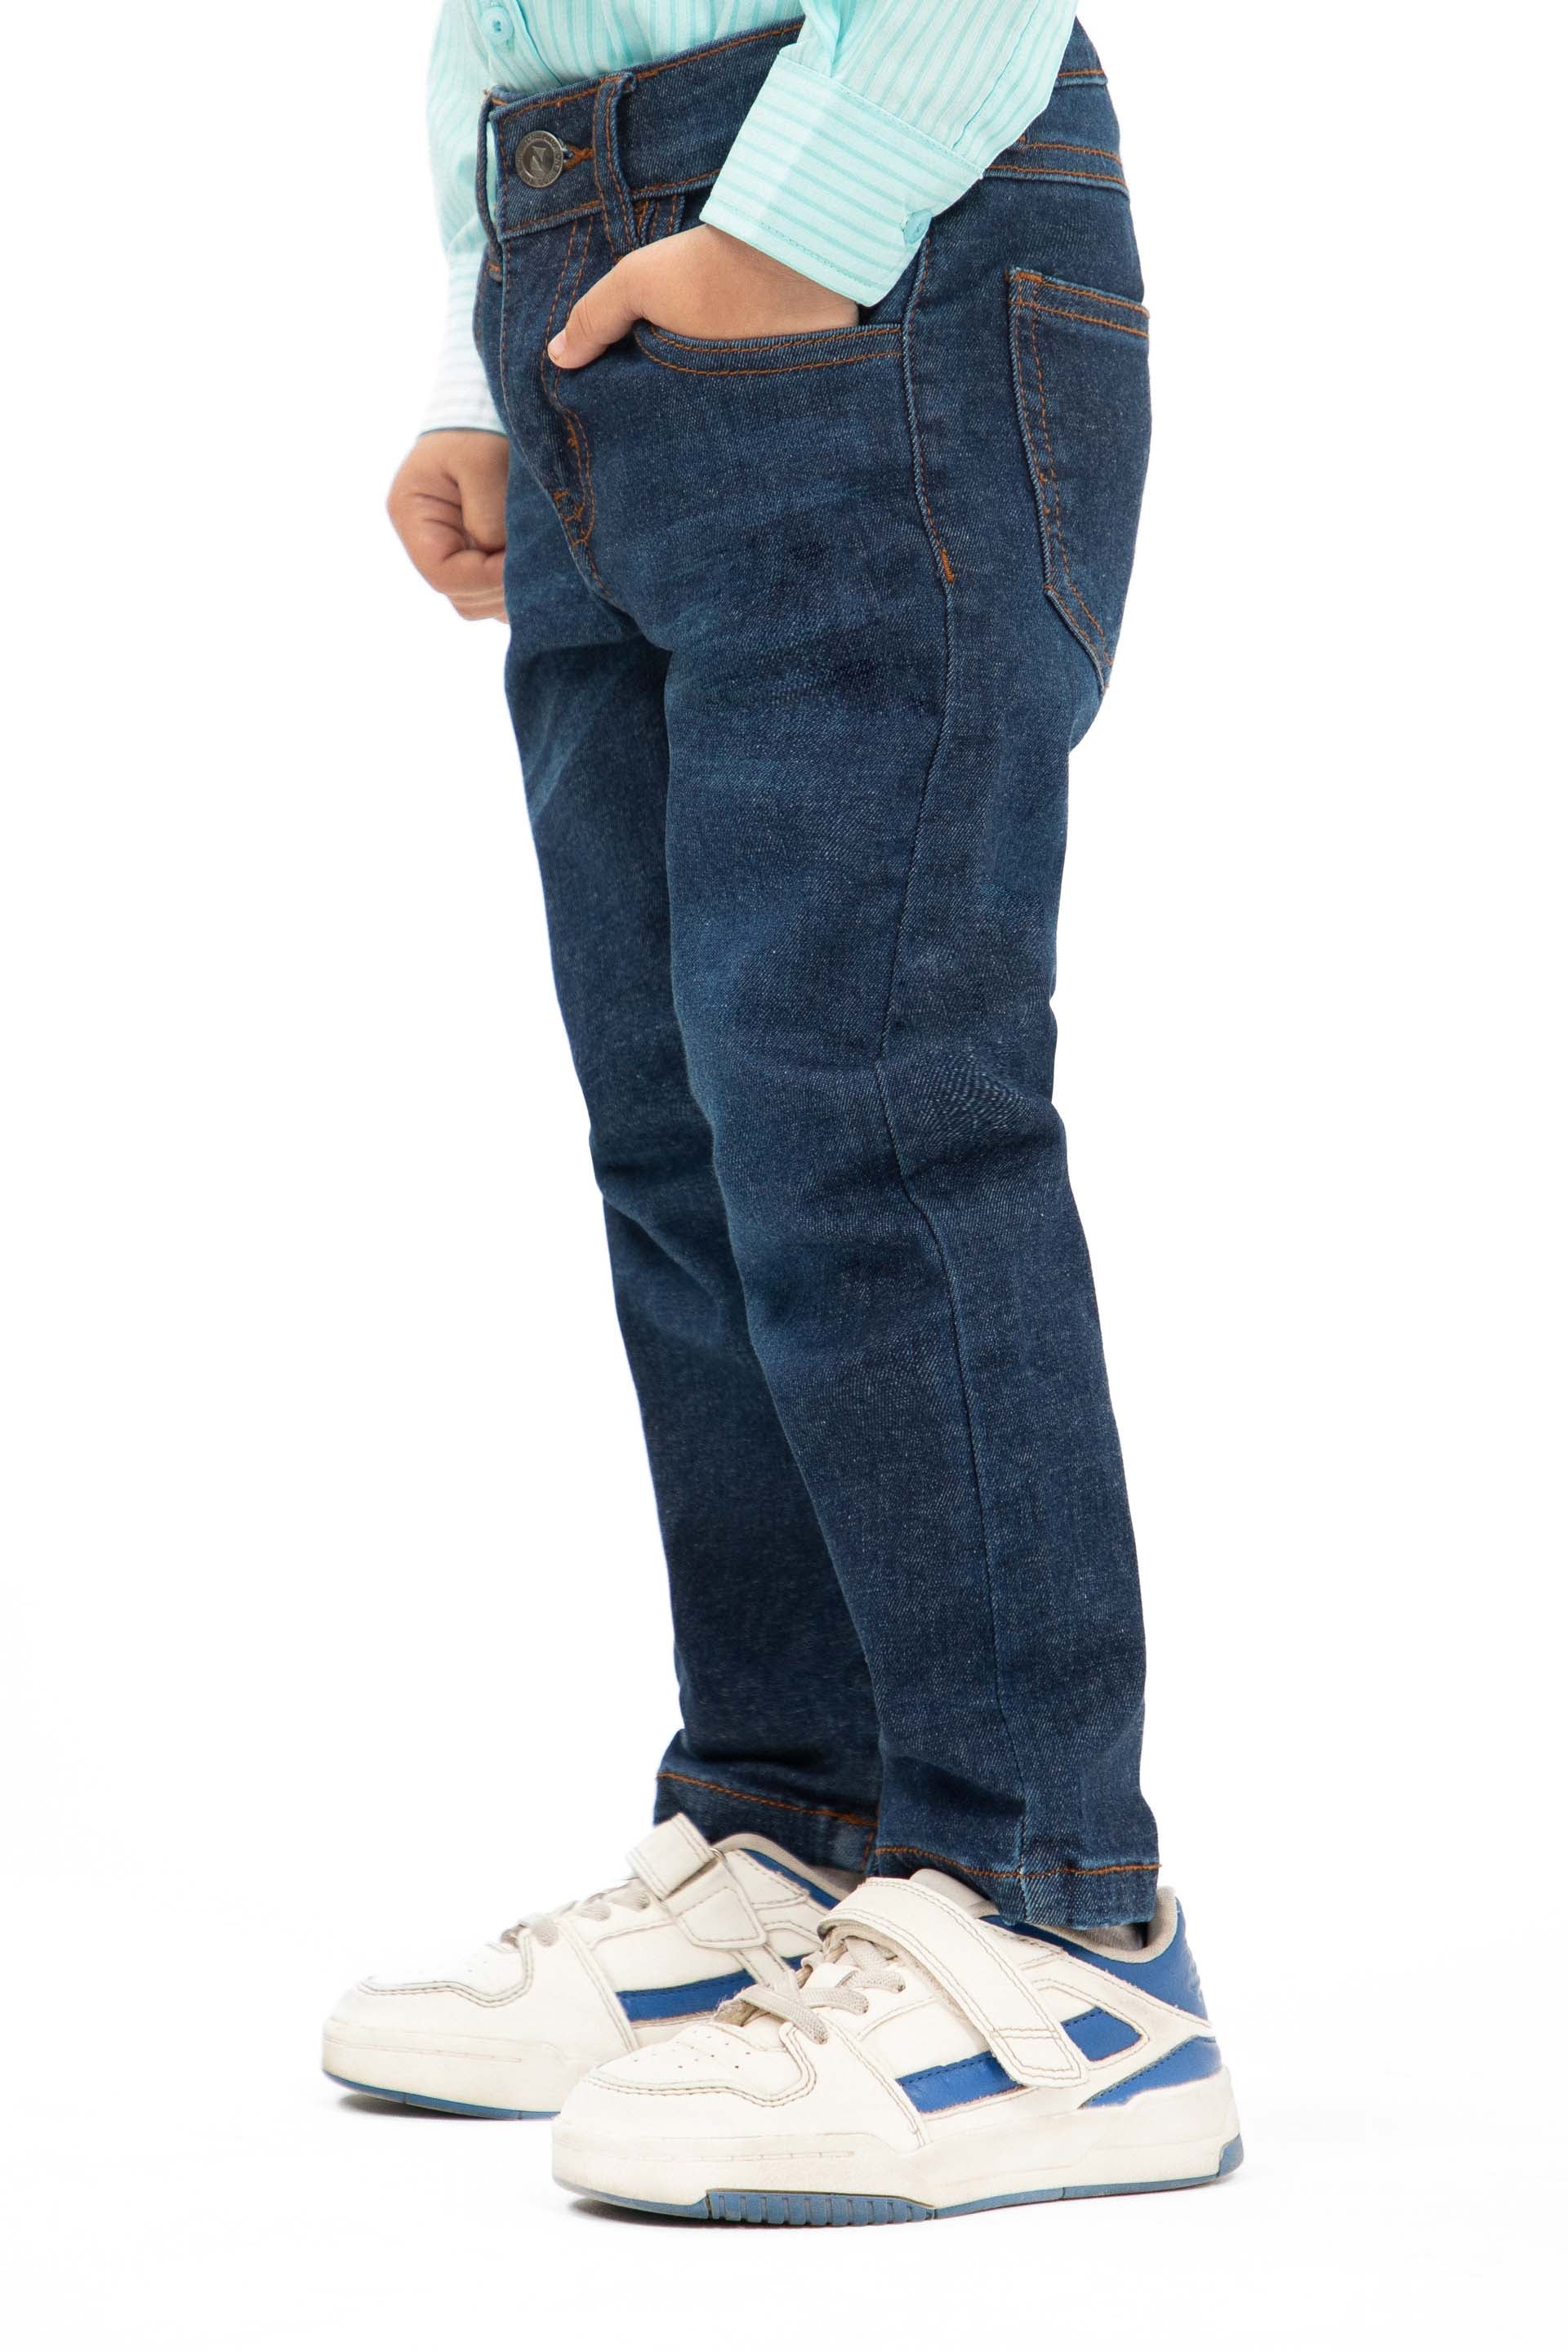 Basic Skinny Jeans Indigo